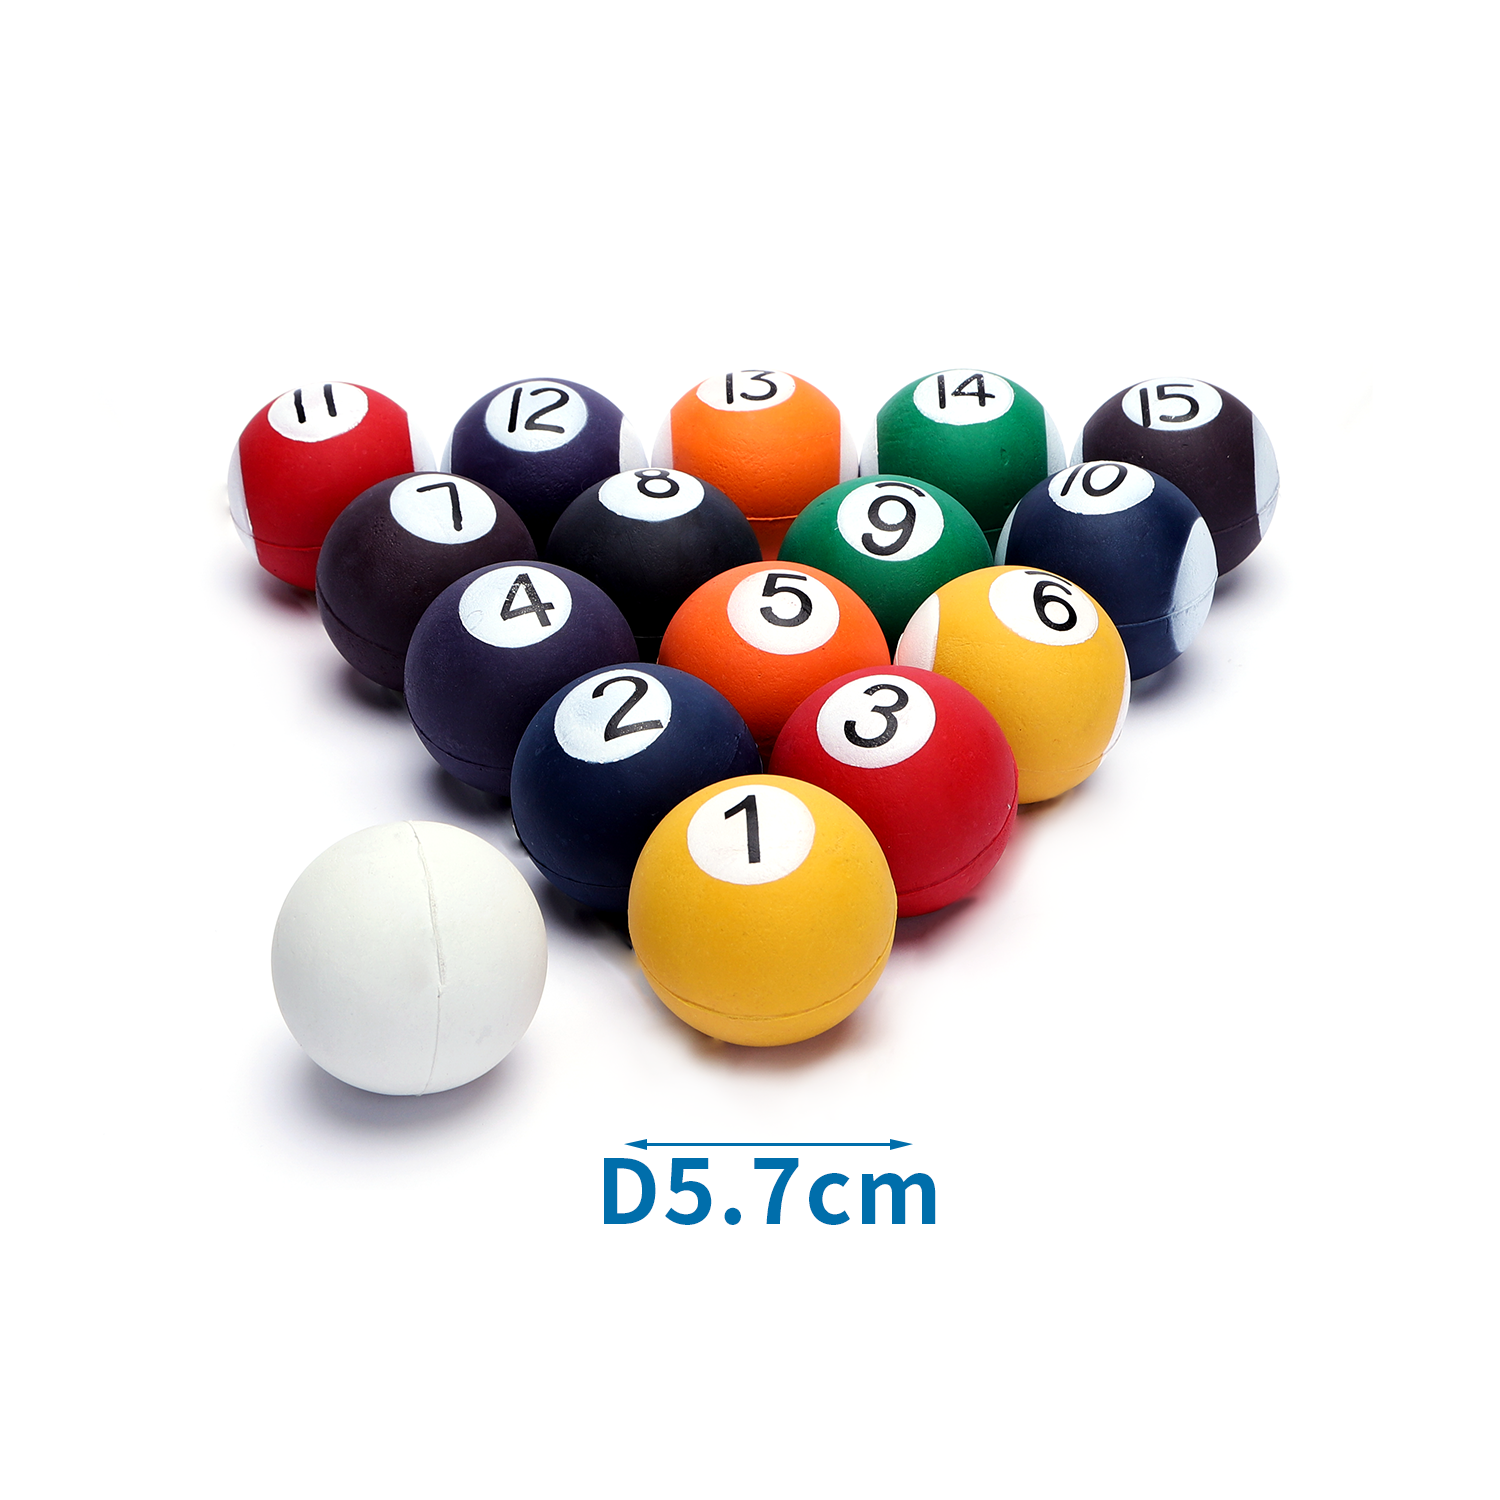 Gumový pěnový míček 5,7cm Nobleza